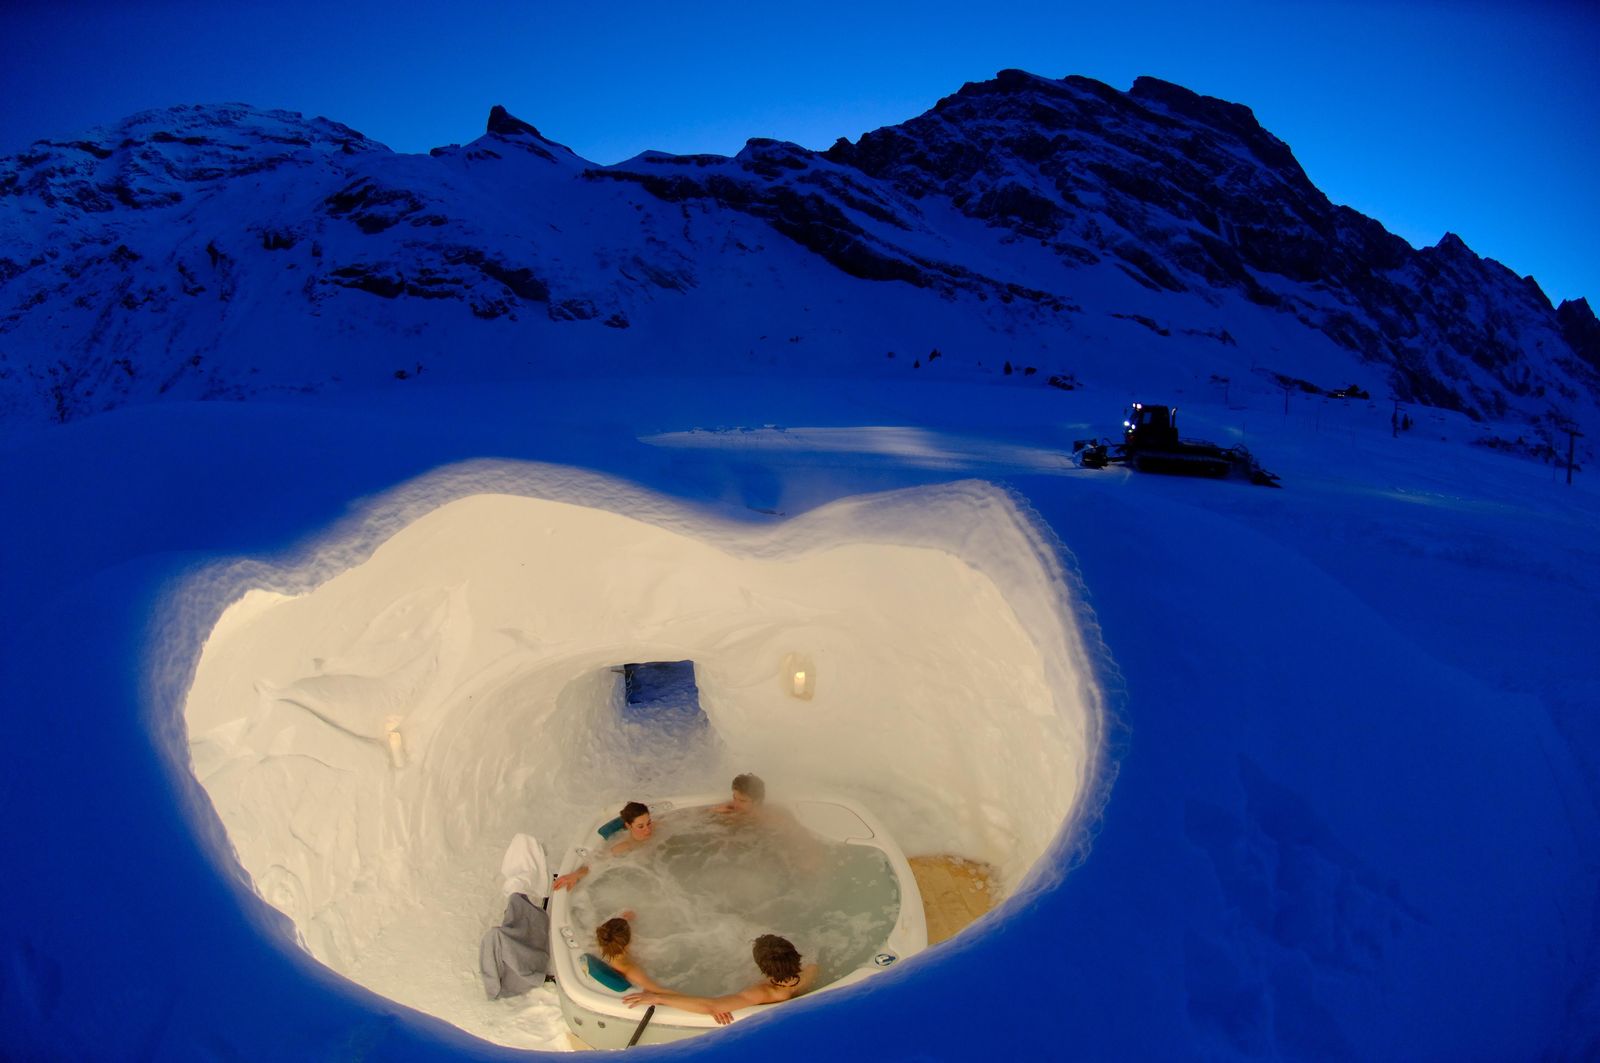 Иглу тепло. Iglu-Dorf в Швейцарии. Иглу - снежный дом эскимосов. Иглу Дорф. Иглу жилище эскимосов внутри.